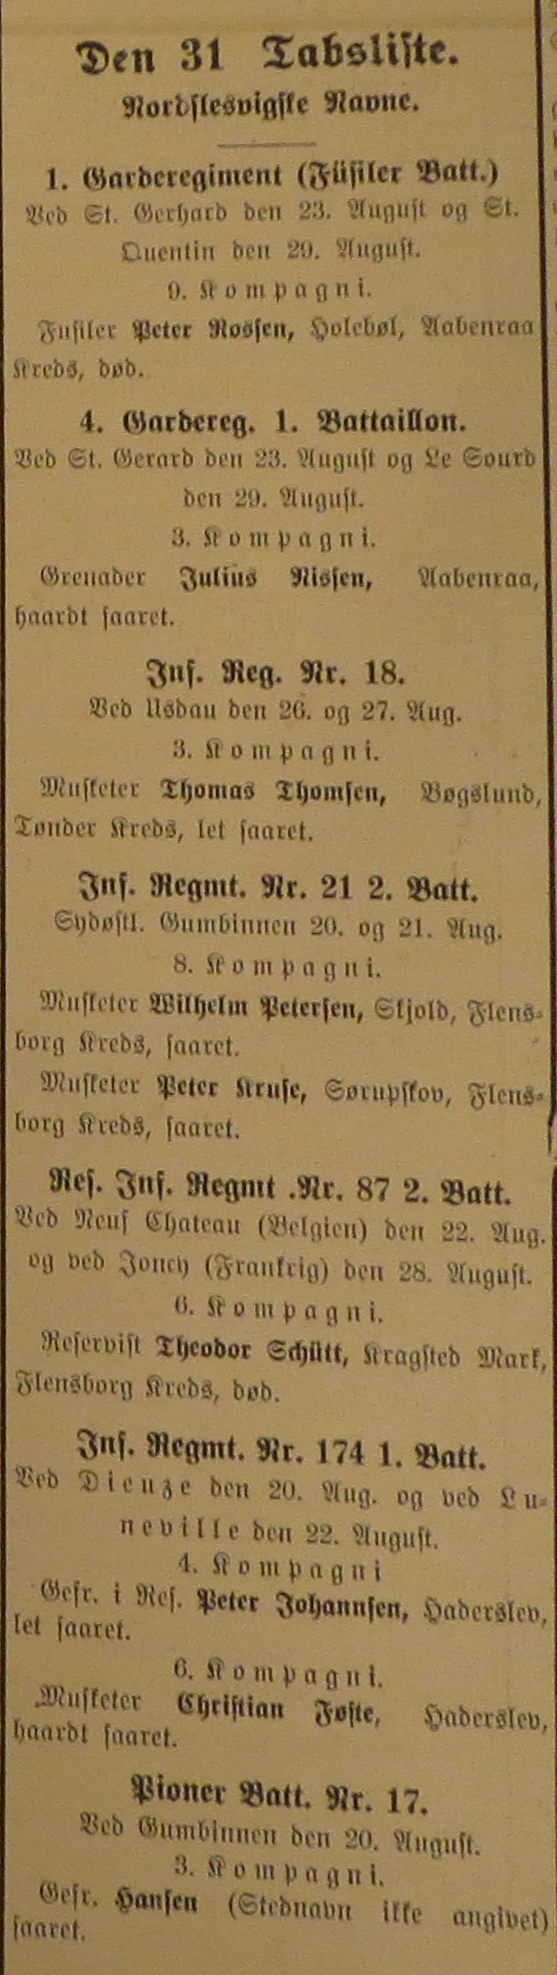 24.09.1914 - tabsliste, Hejmdal